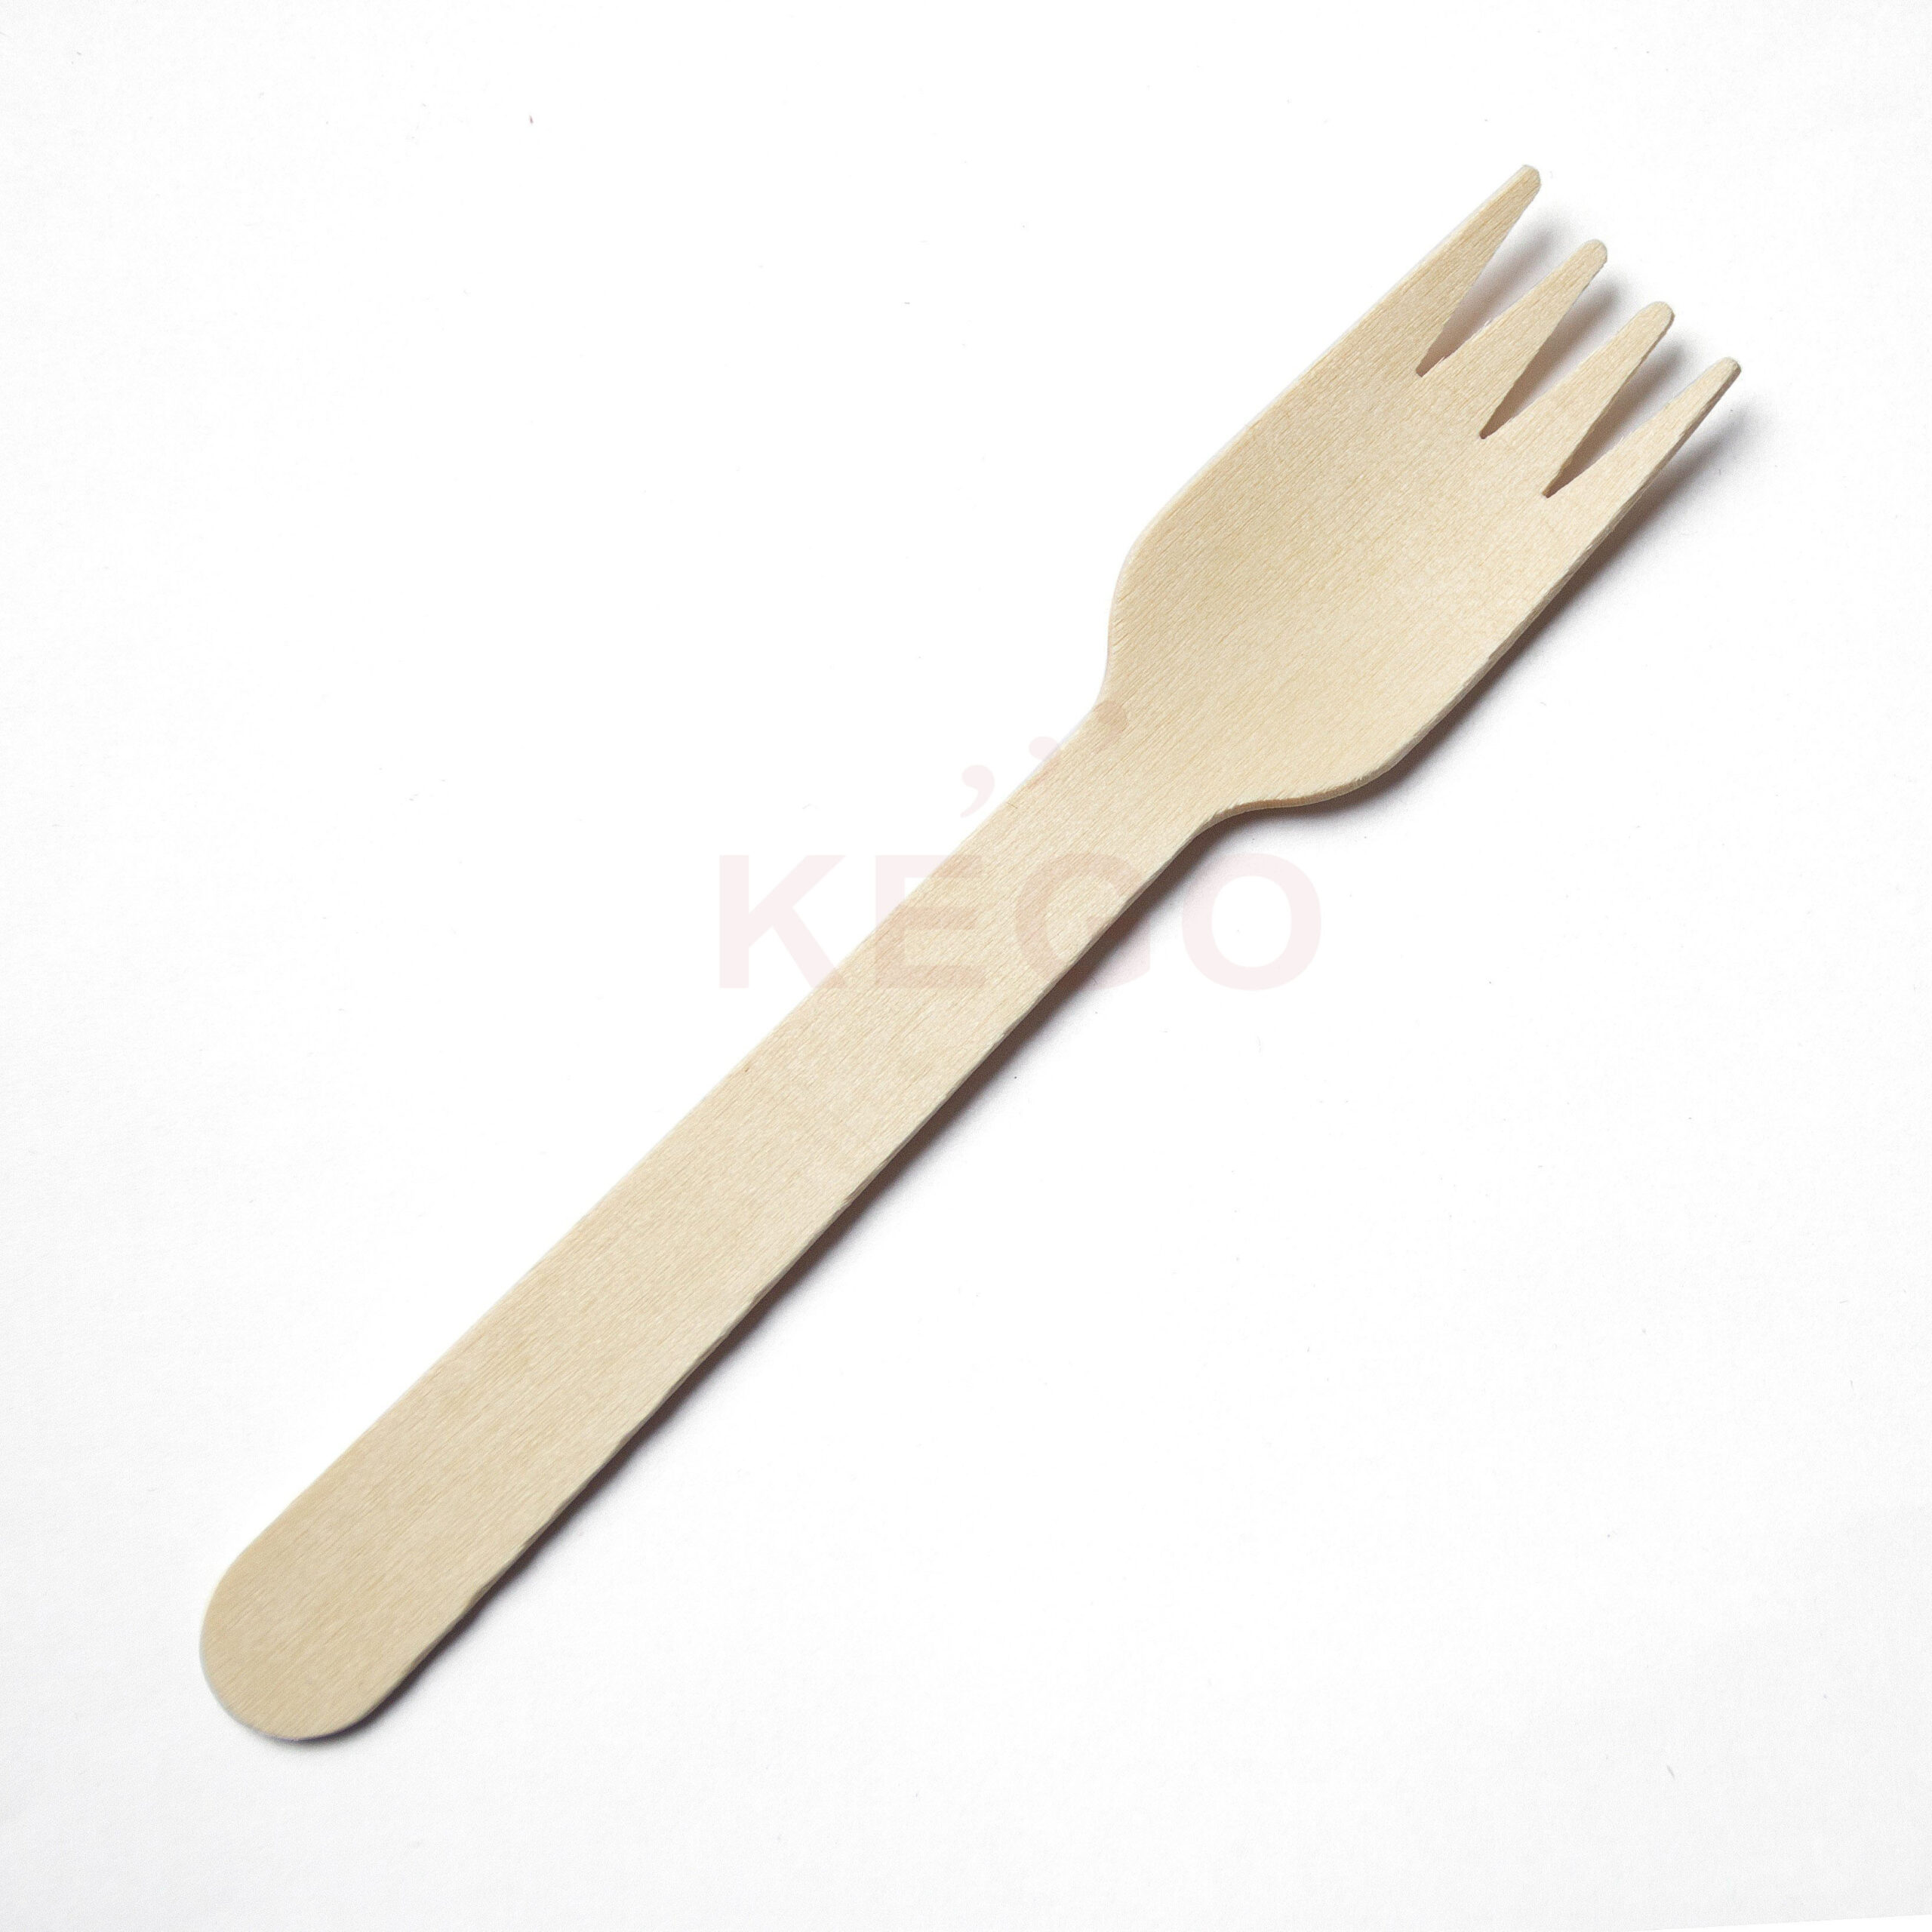 https://kego.vn/wp-content/uploads/2015/09/Disposable-Wooden-Fork-160-2-scaled.jpg